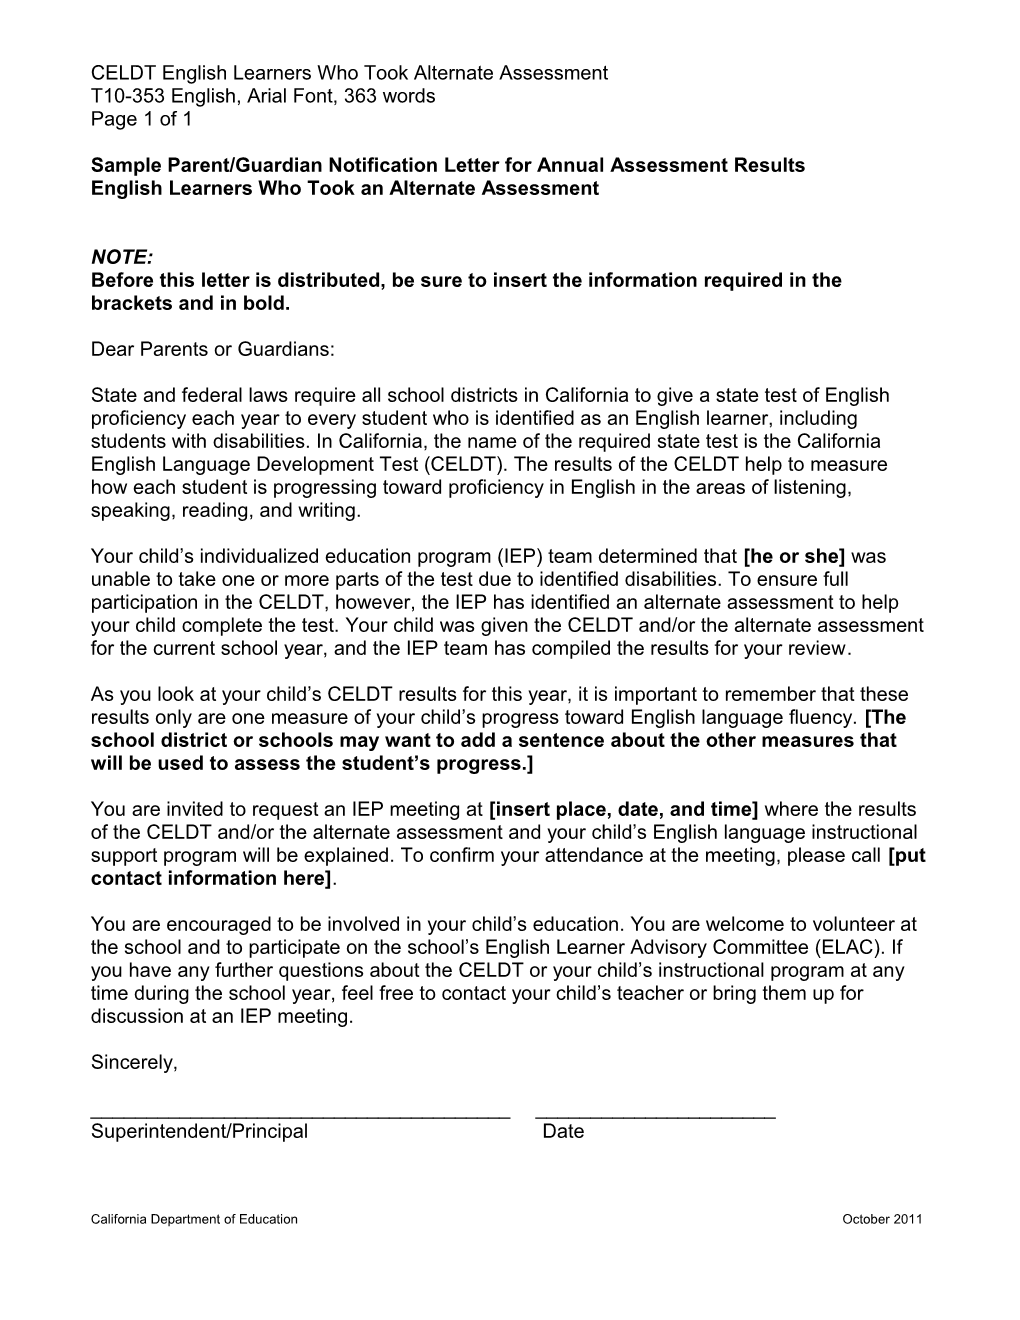 CELDT 2011 Sample Letter of EL Who Took an Alternate Assessment - CELDT (CA Dept of Education)